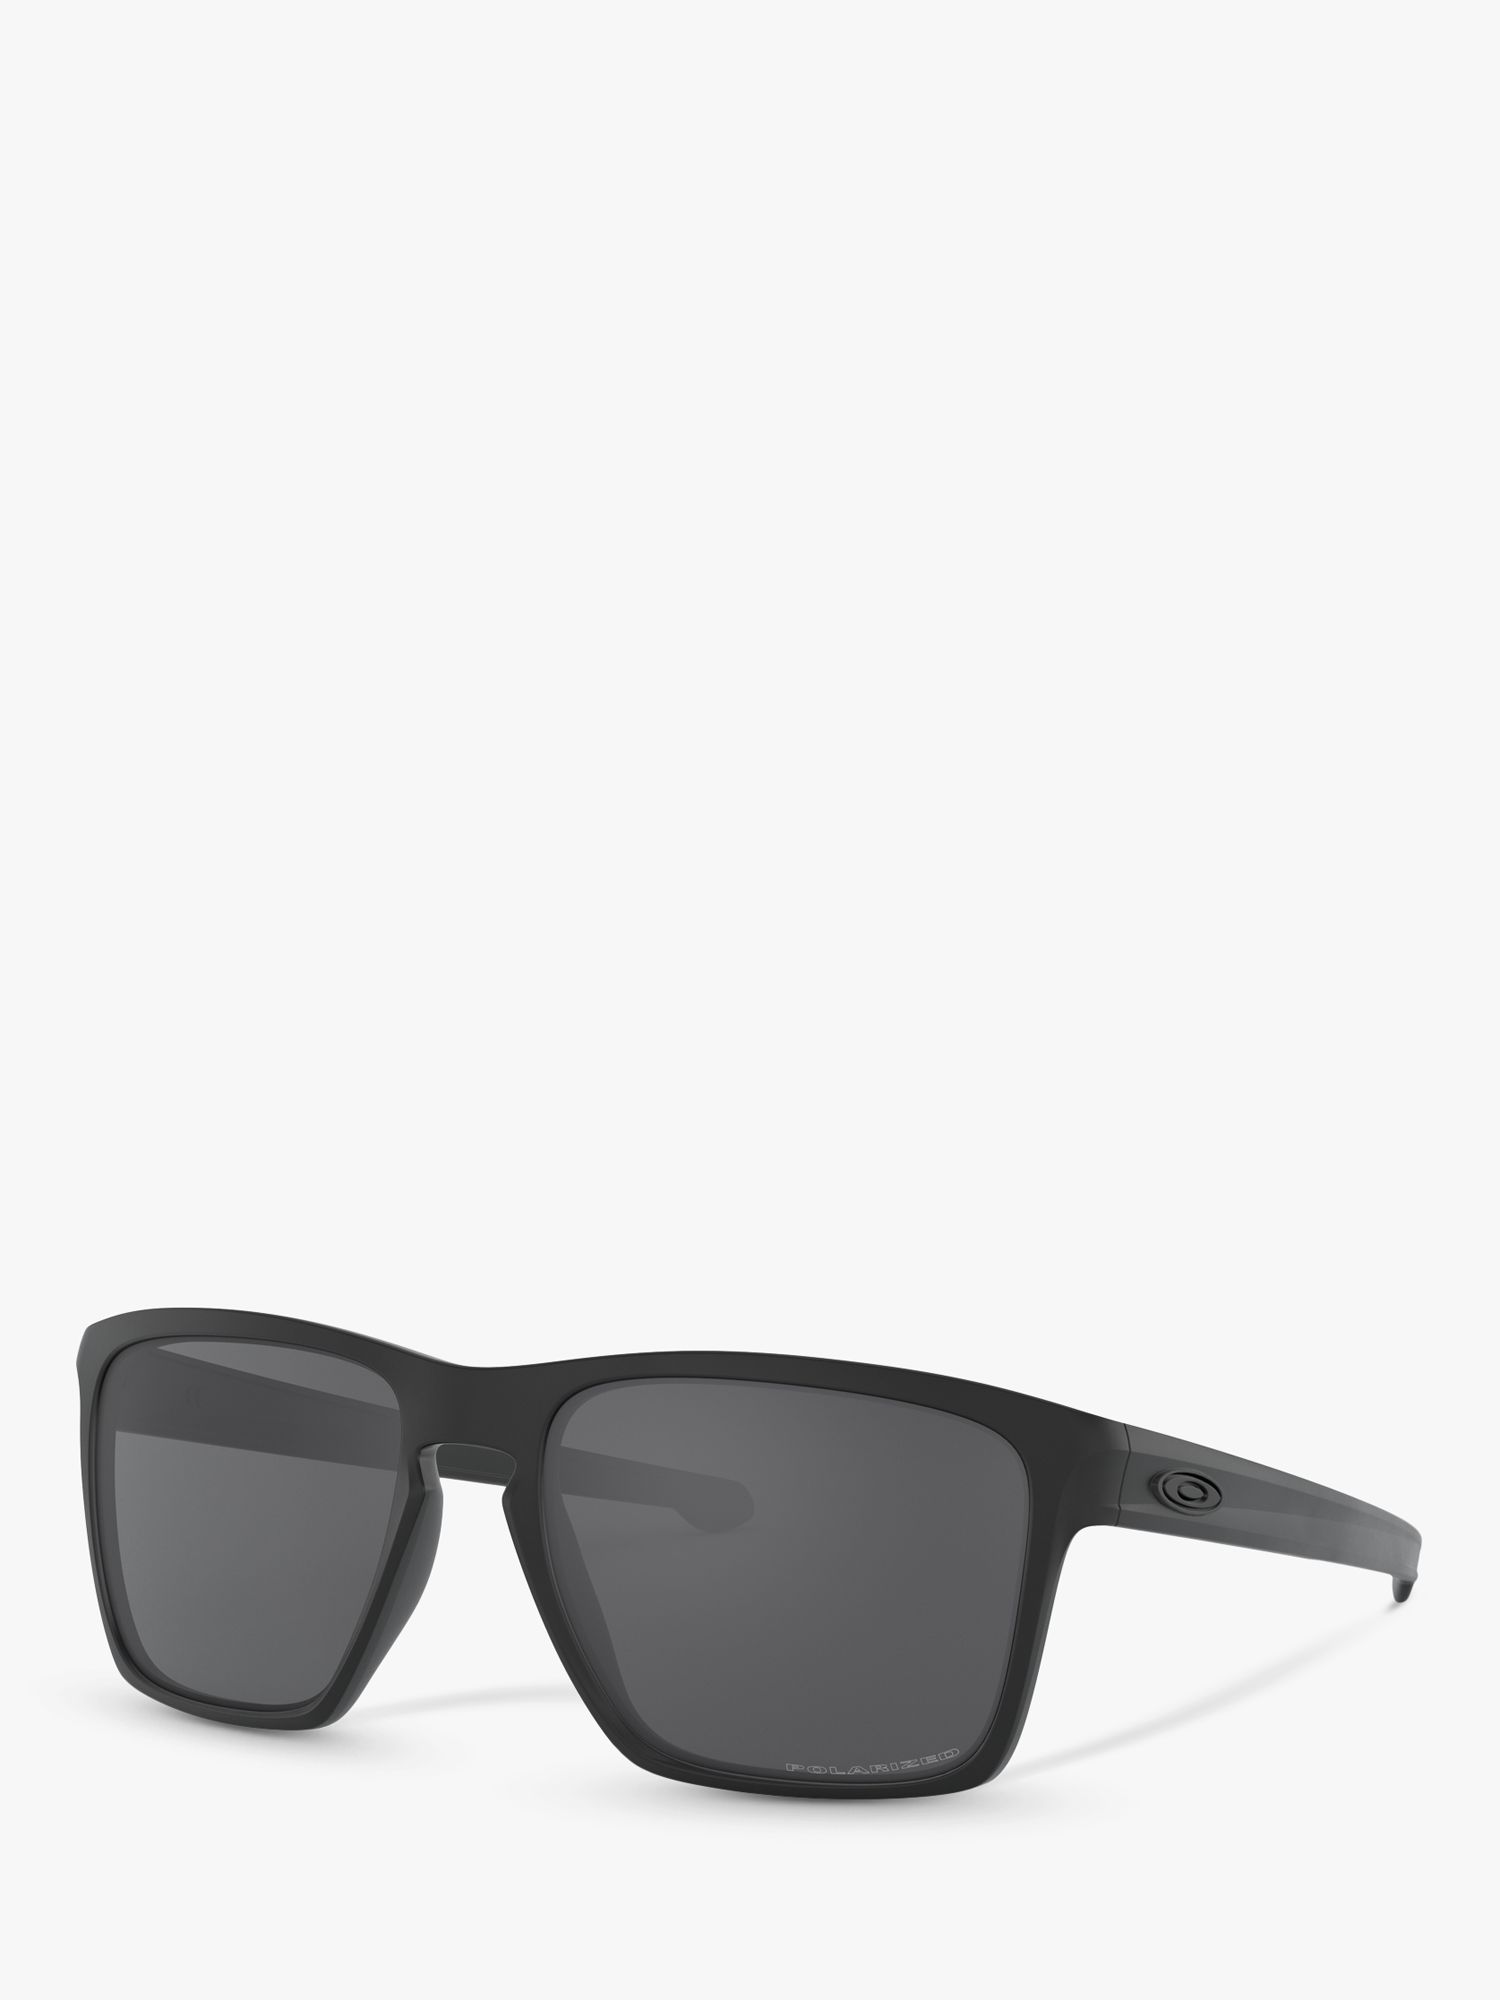 OO9341 Серебристые квадратные поляризованные солнцезащитные очки XL Oakley, черный чехол mypads fondina coccodrillo для micromax q450 canvas sliver 5